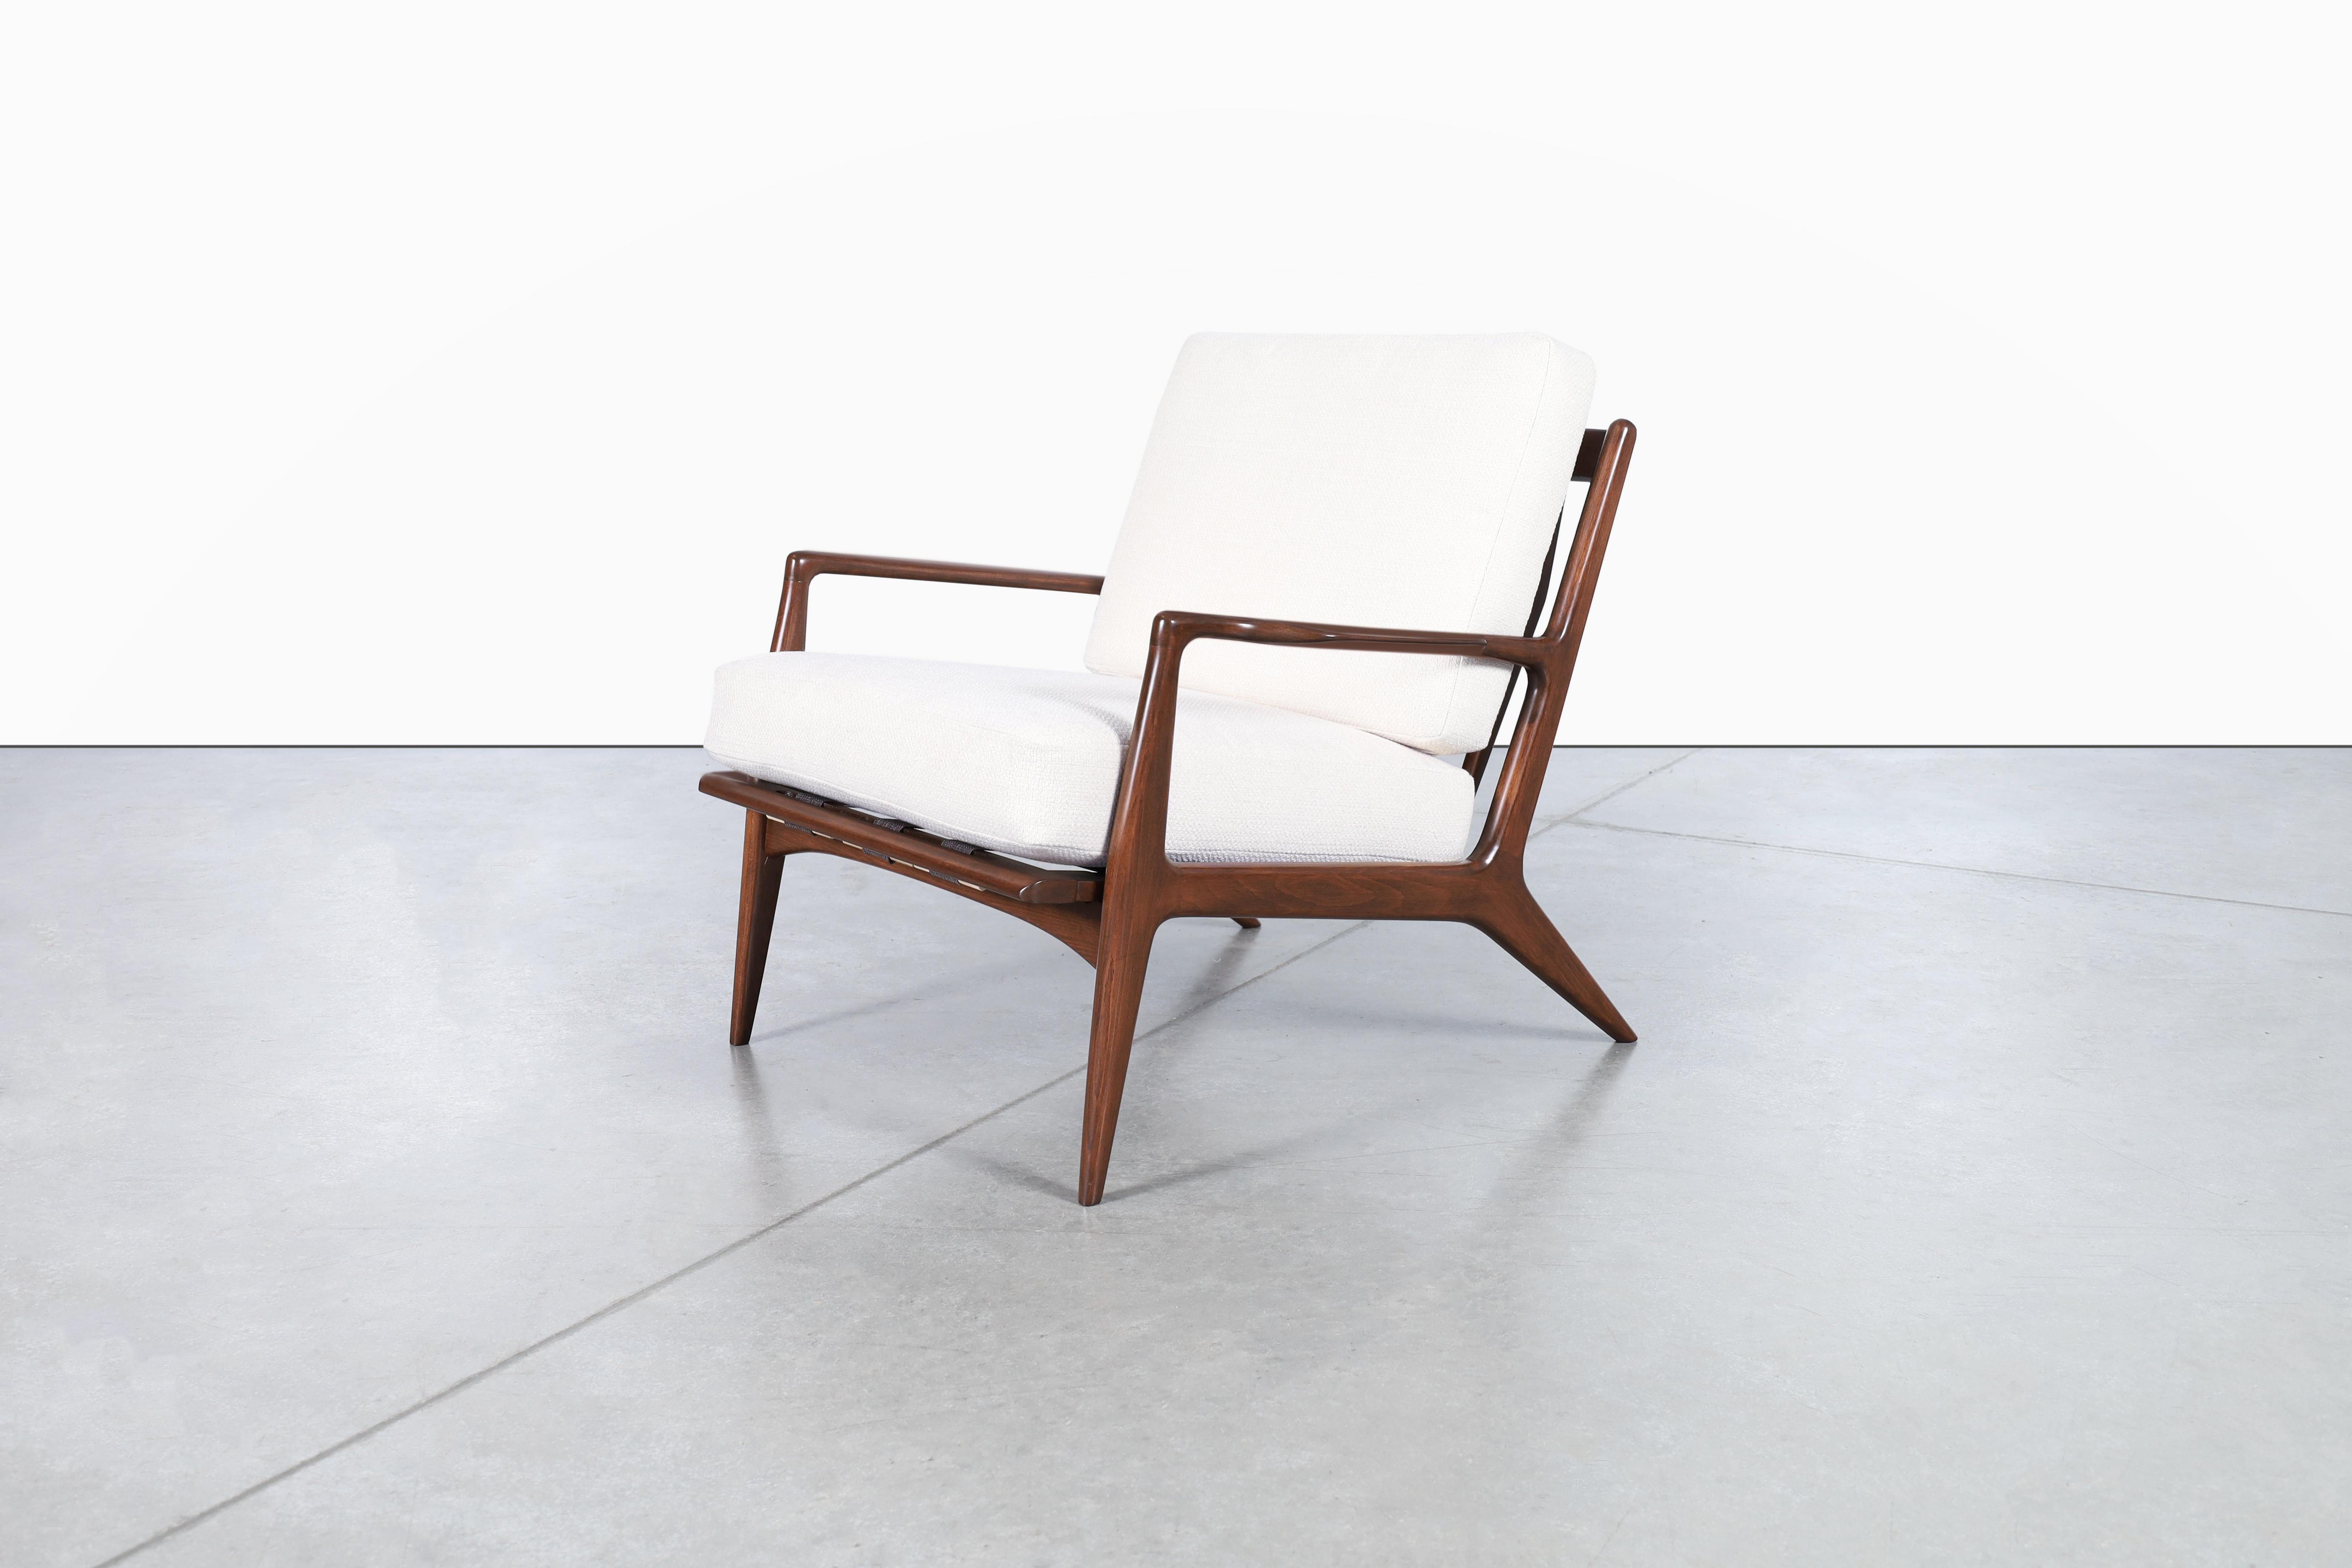 Beeindruckender moderner dänischer Sessel aus Nussbaumholz, entworfen von dem Architekten und Möbelbauer Ib Kofod Larsen und hergestellt von Selig in Dänemark, ca. 1960er Jahre. Dieser fabelhafte Loungesessel verfügt über ein Gestell aus massiver,